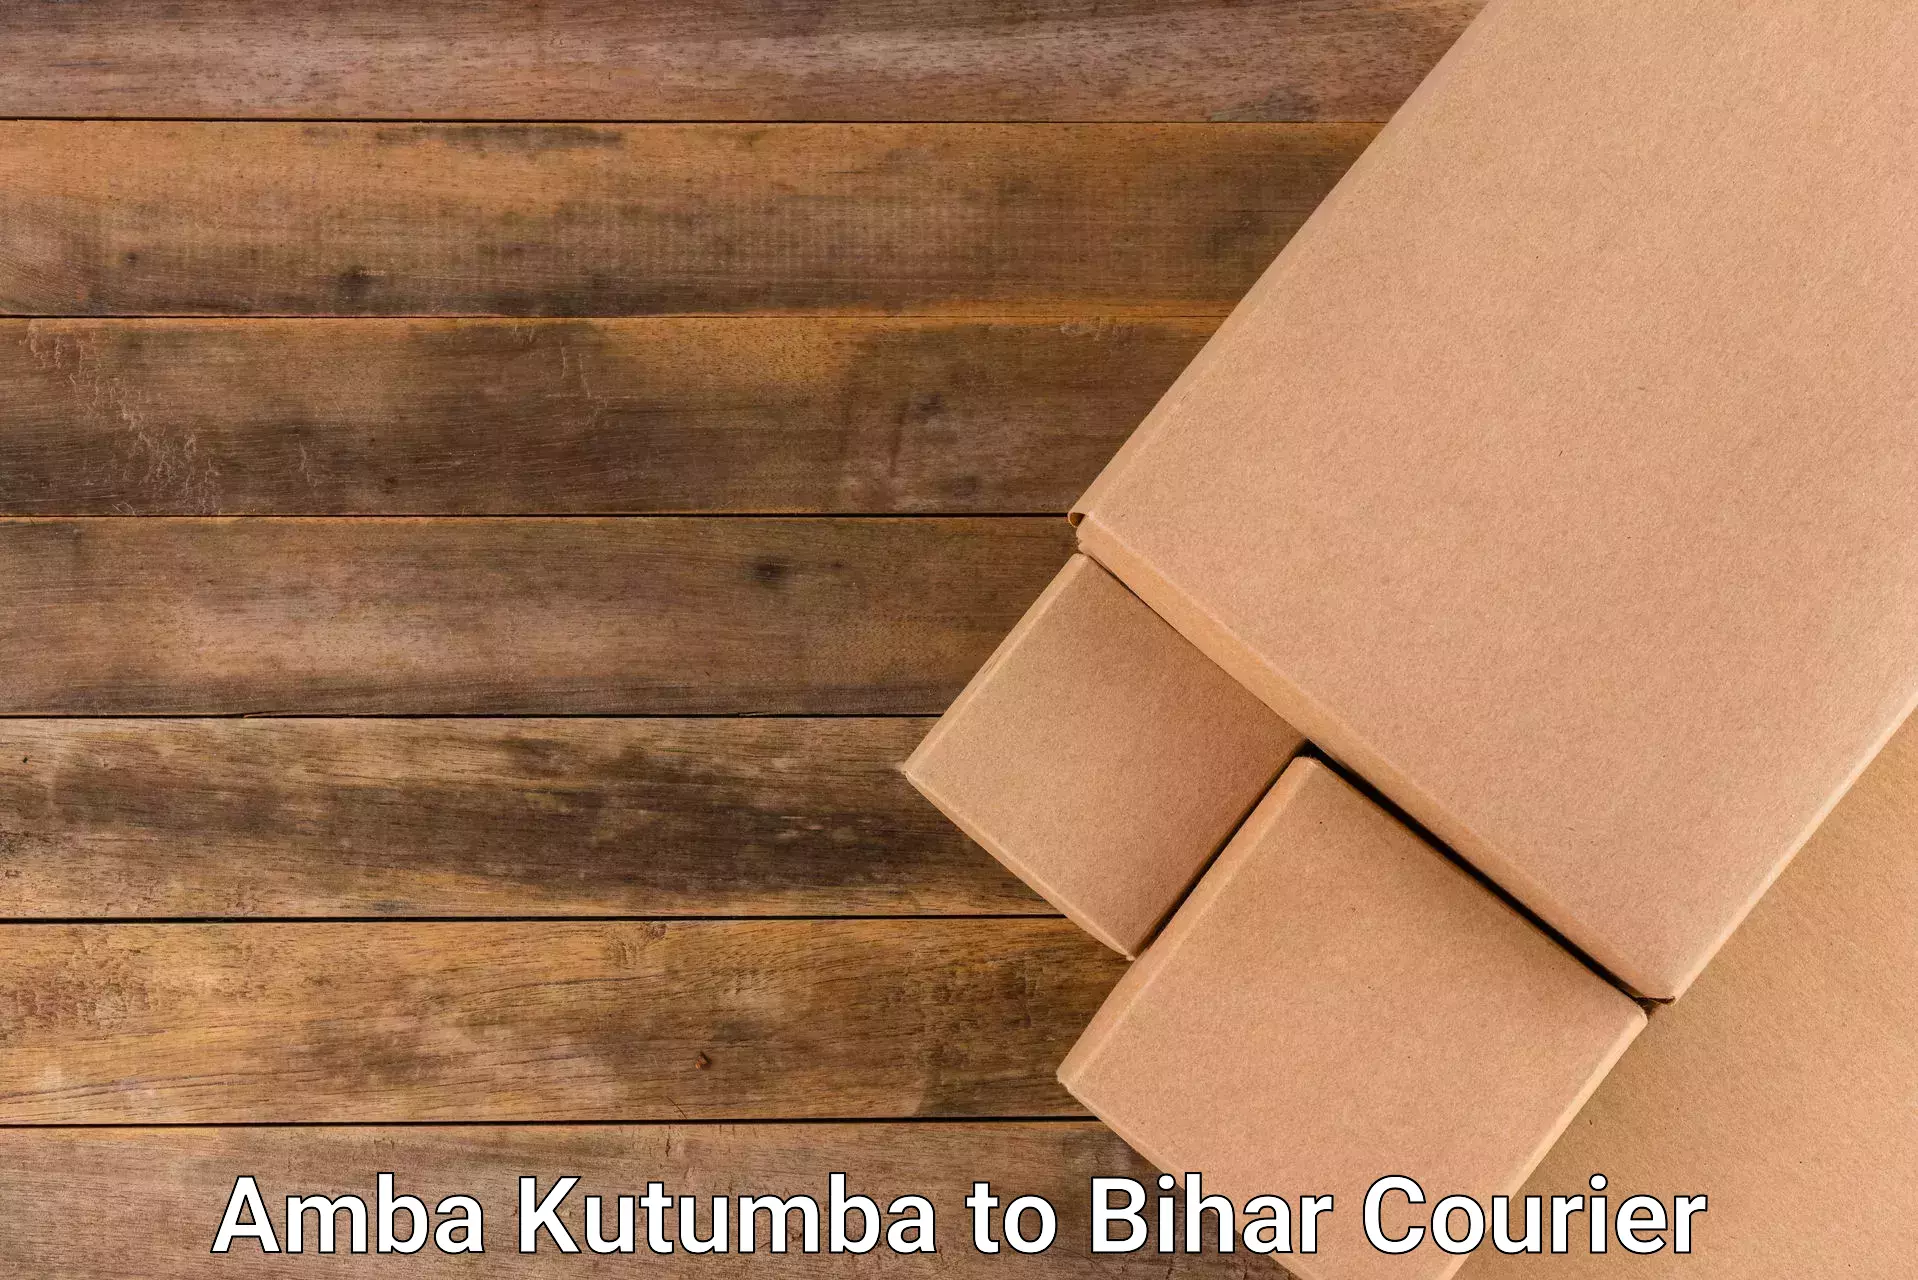 Urban courier service Amba Kutumba to Bihar